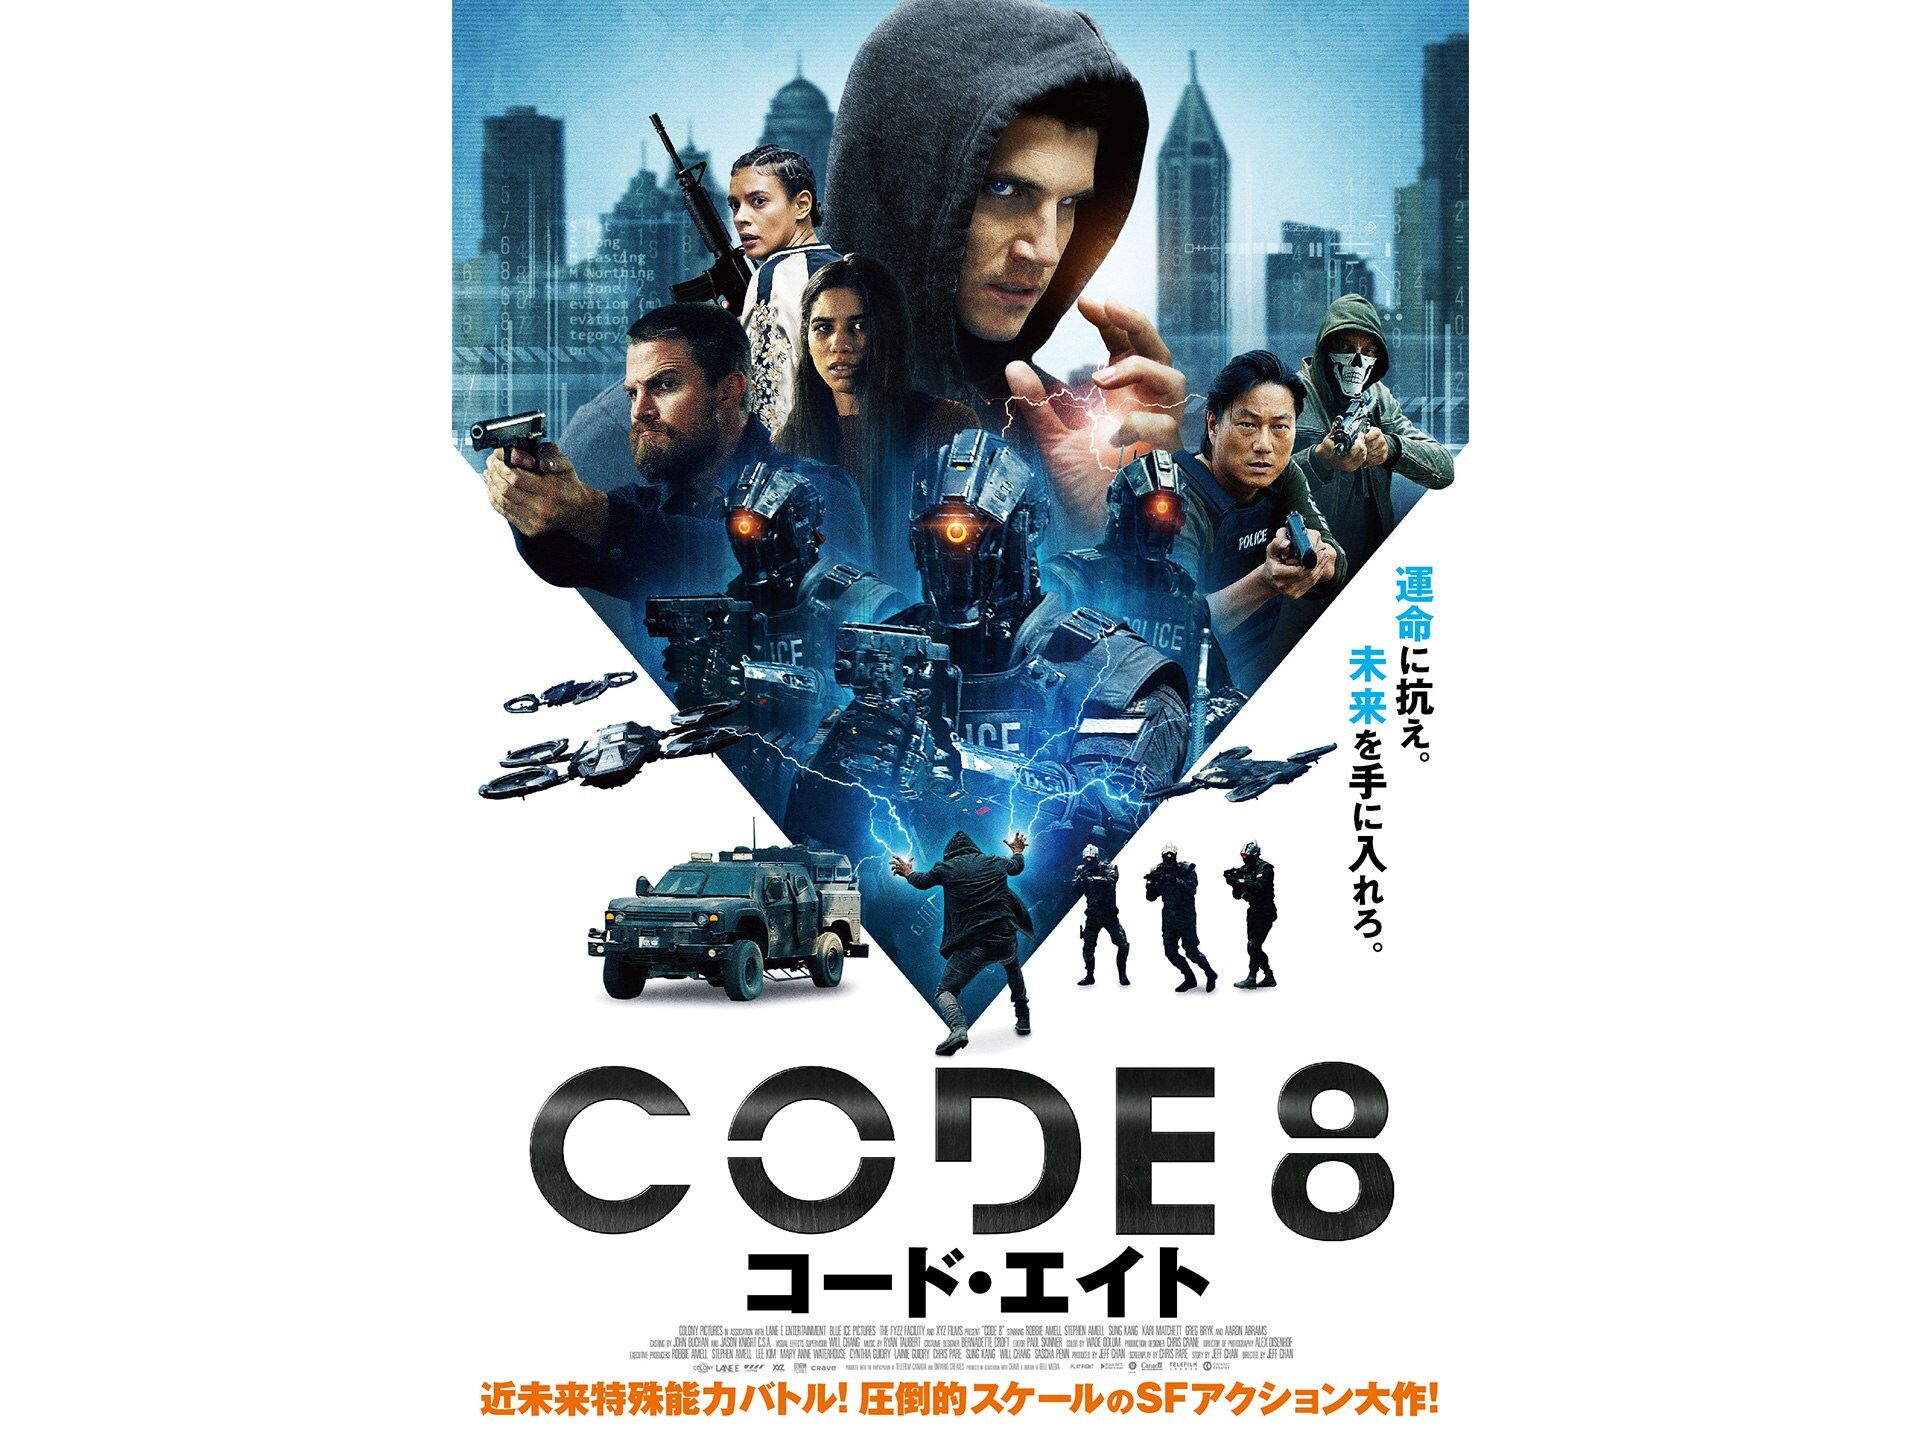 映画 Code8 コード エイト Code8 コード エイト 吹き替え 字幕版 フル動画 初月無料 動画配信サービスのビデオマーケット